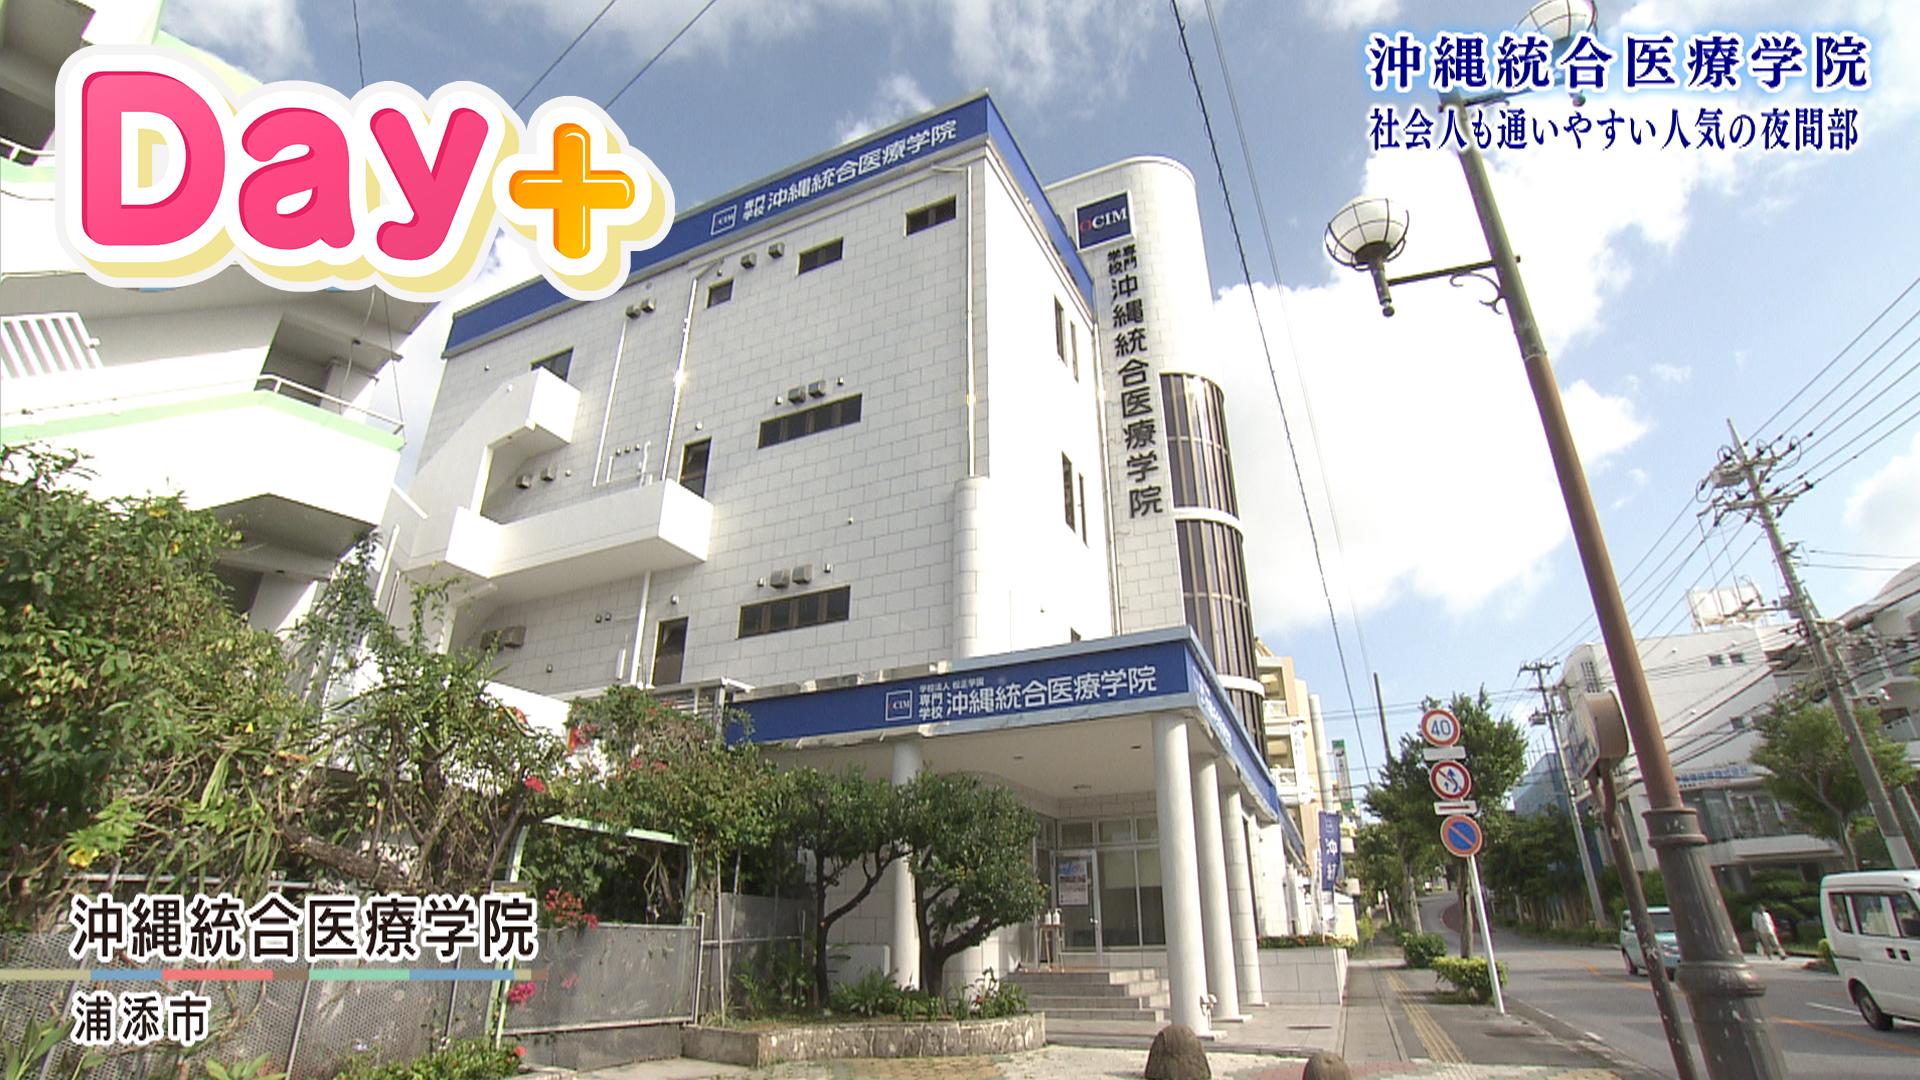 沖縄統合医療学院